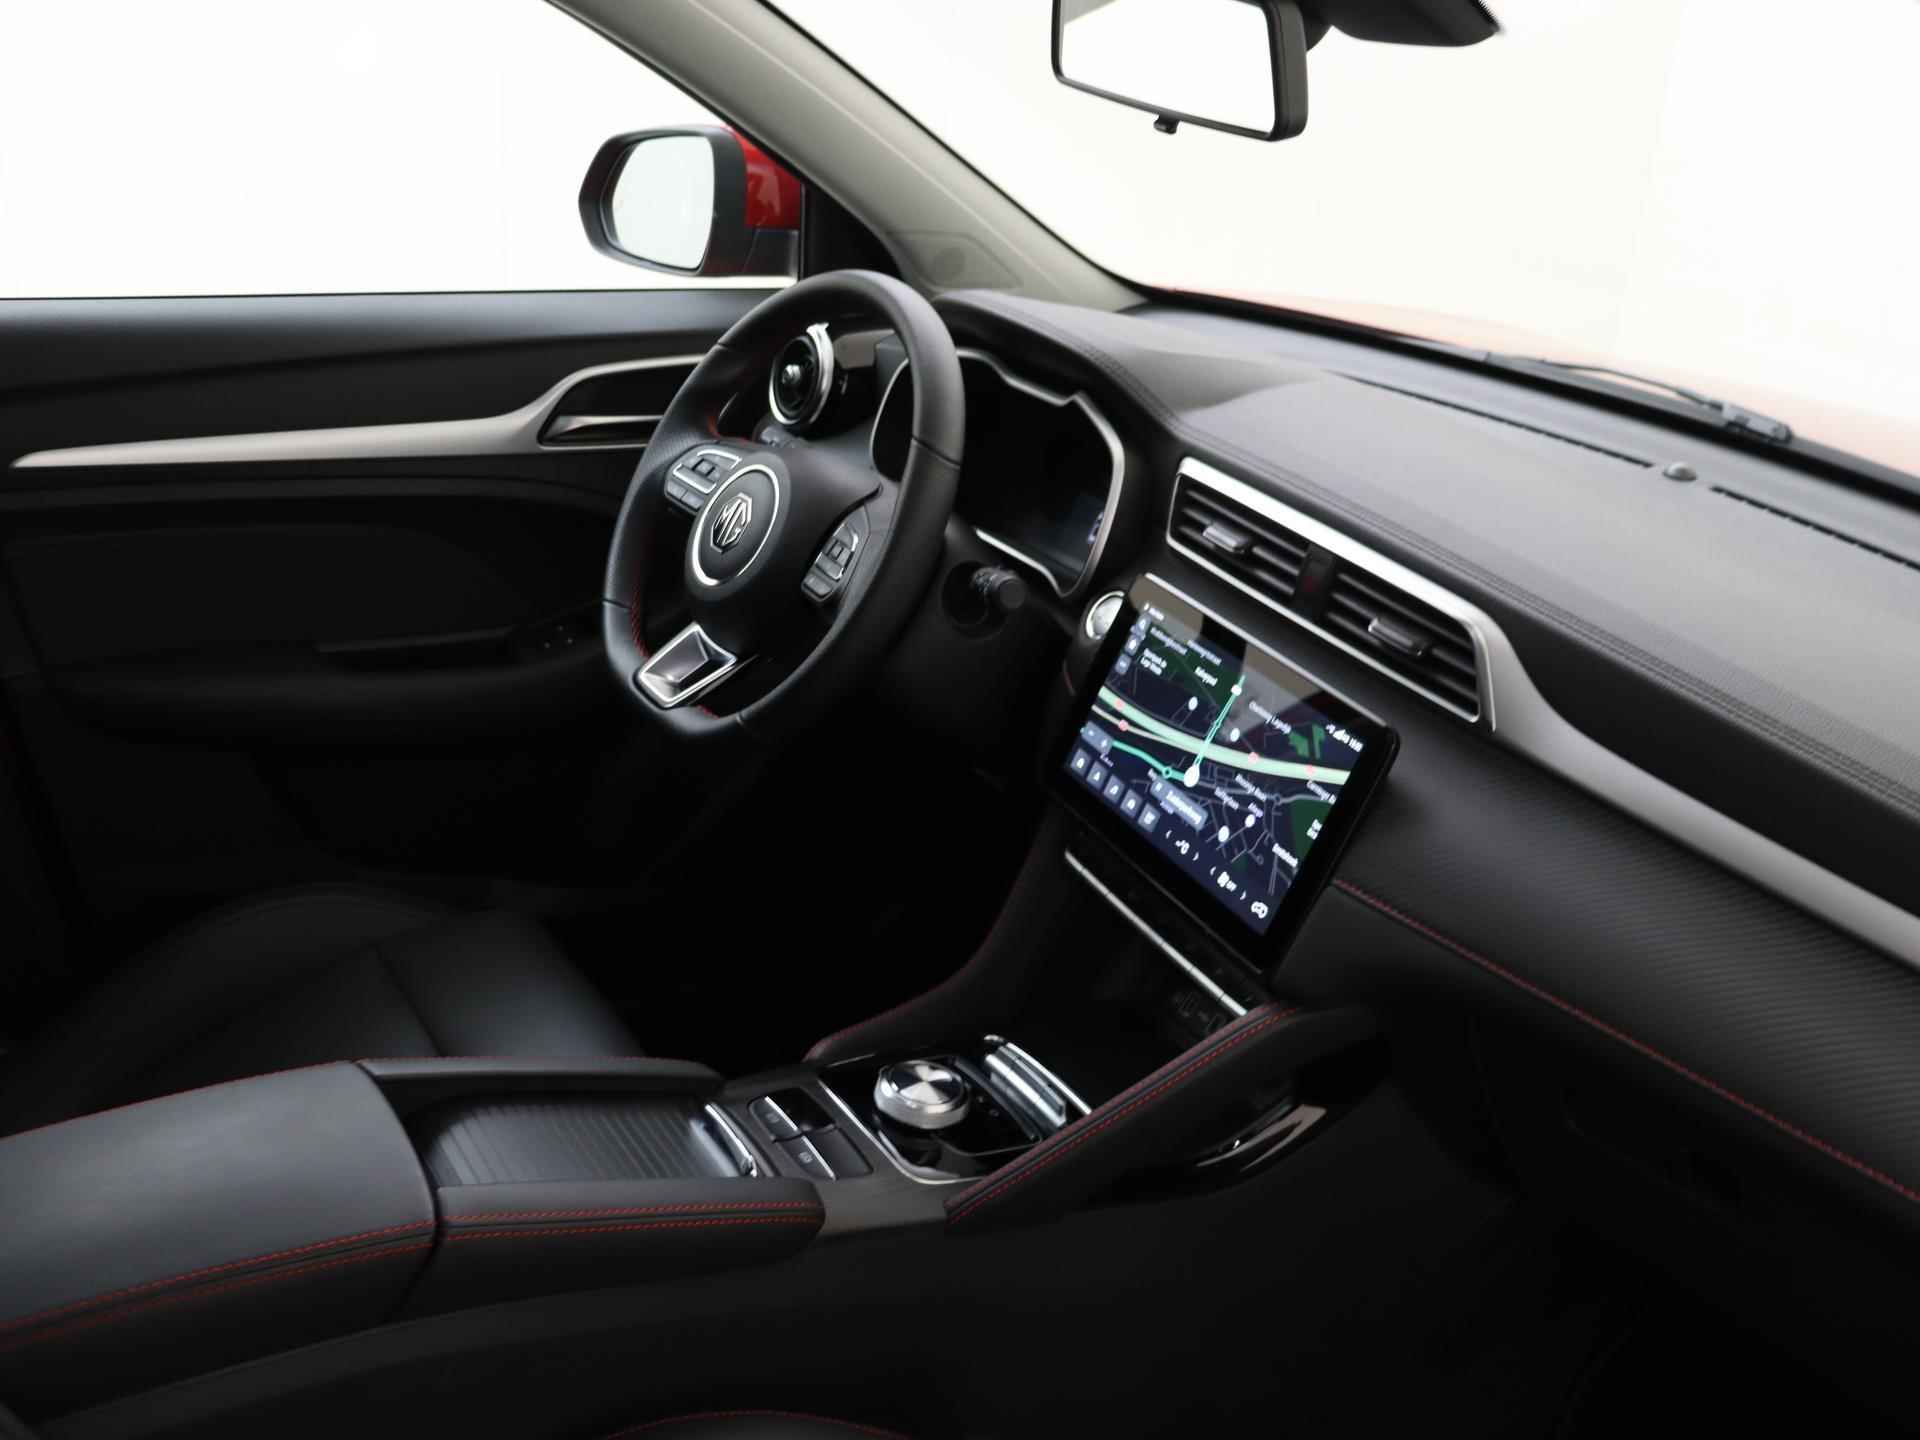 MG ZS EV Standard Range Luxury 50 kWh 320 KM WLTP | Panoramisch schuifkanteldak | 360 graden camera | Black Pack | Geblindeerde achterruiten | 19 inch Polished sportvelgen met Allseasonbanden - 18/30